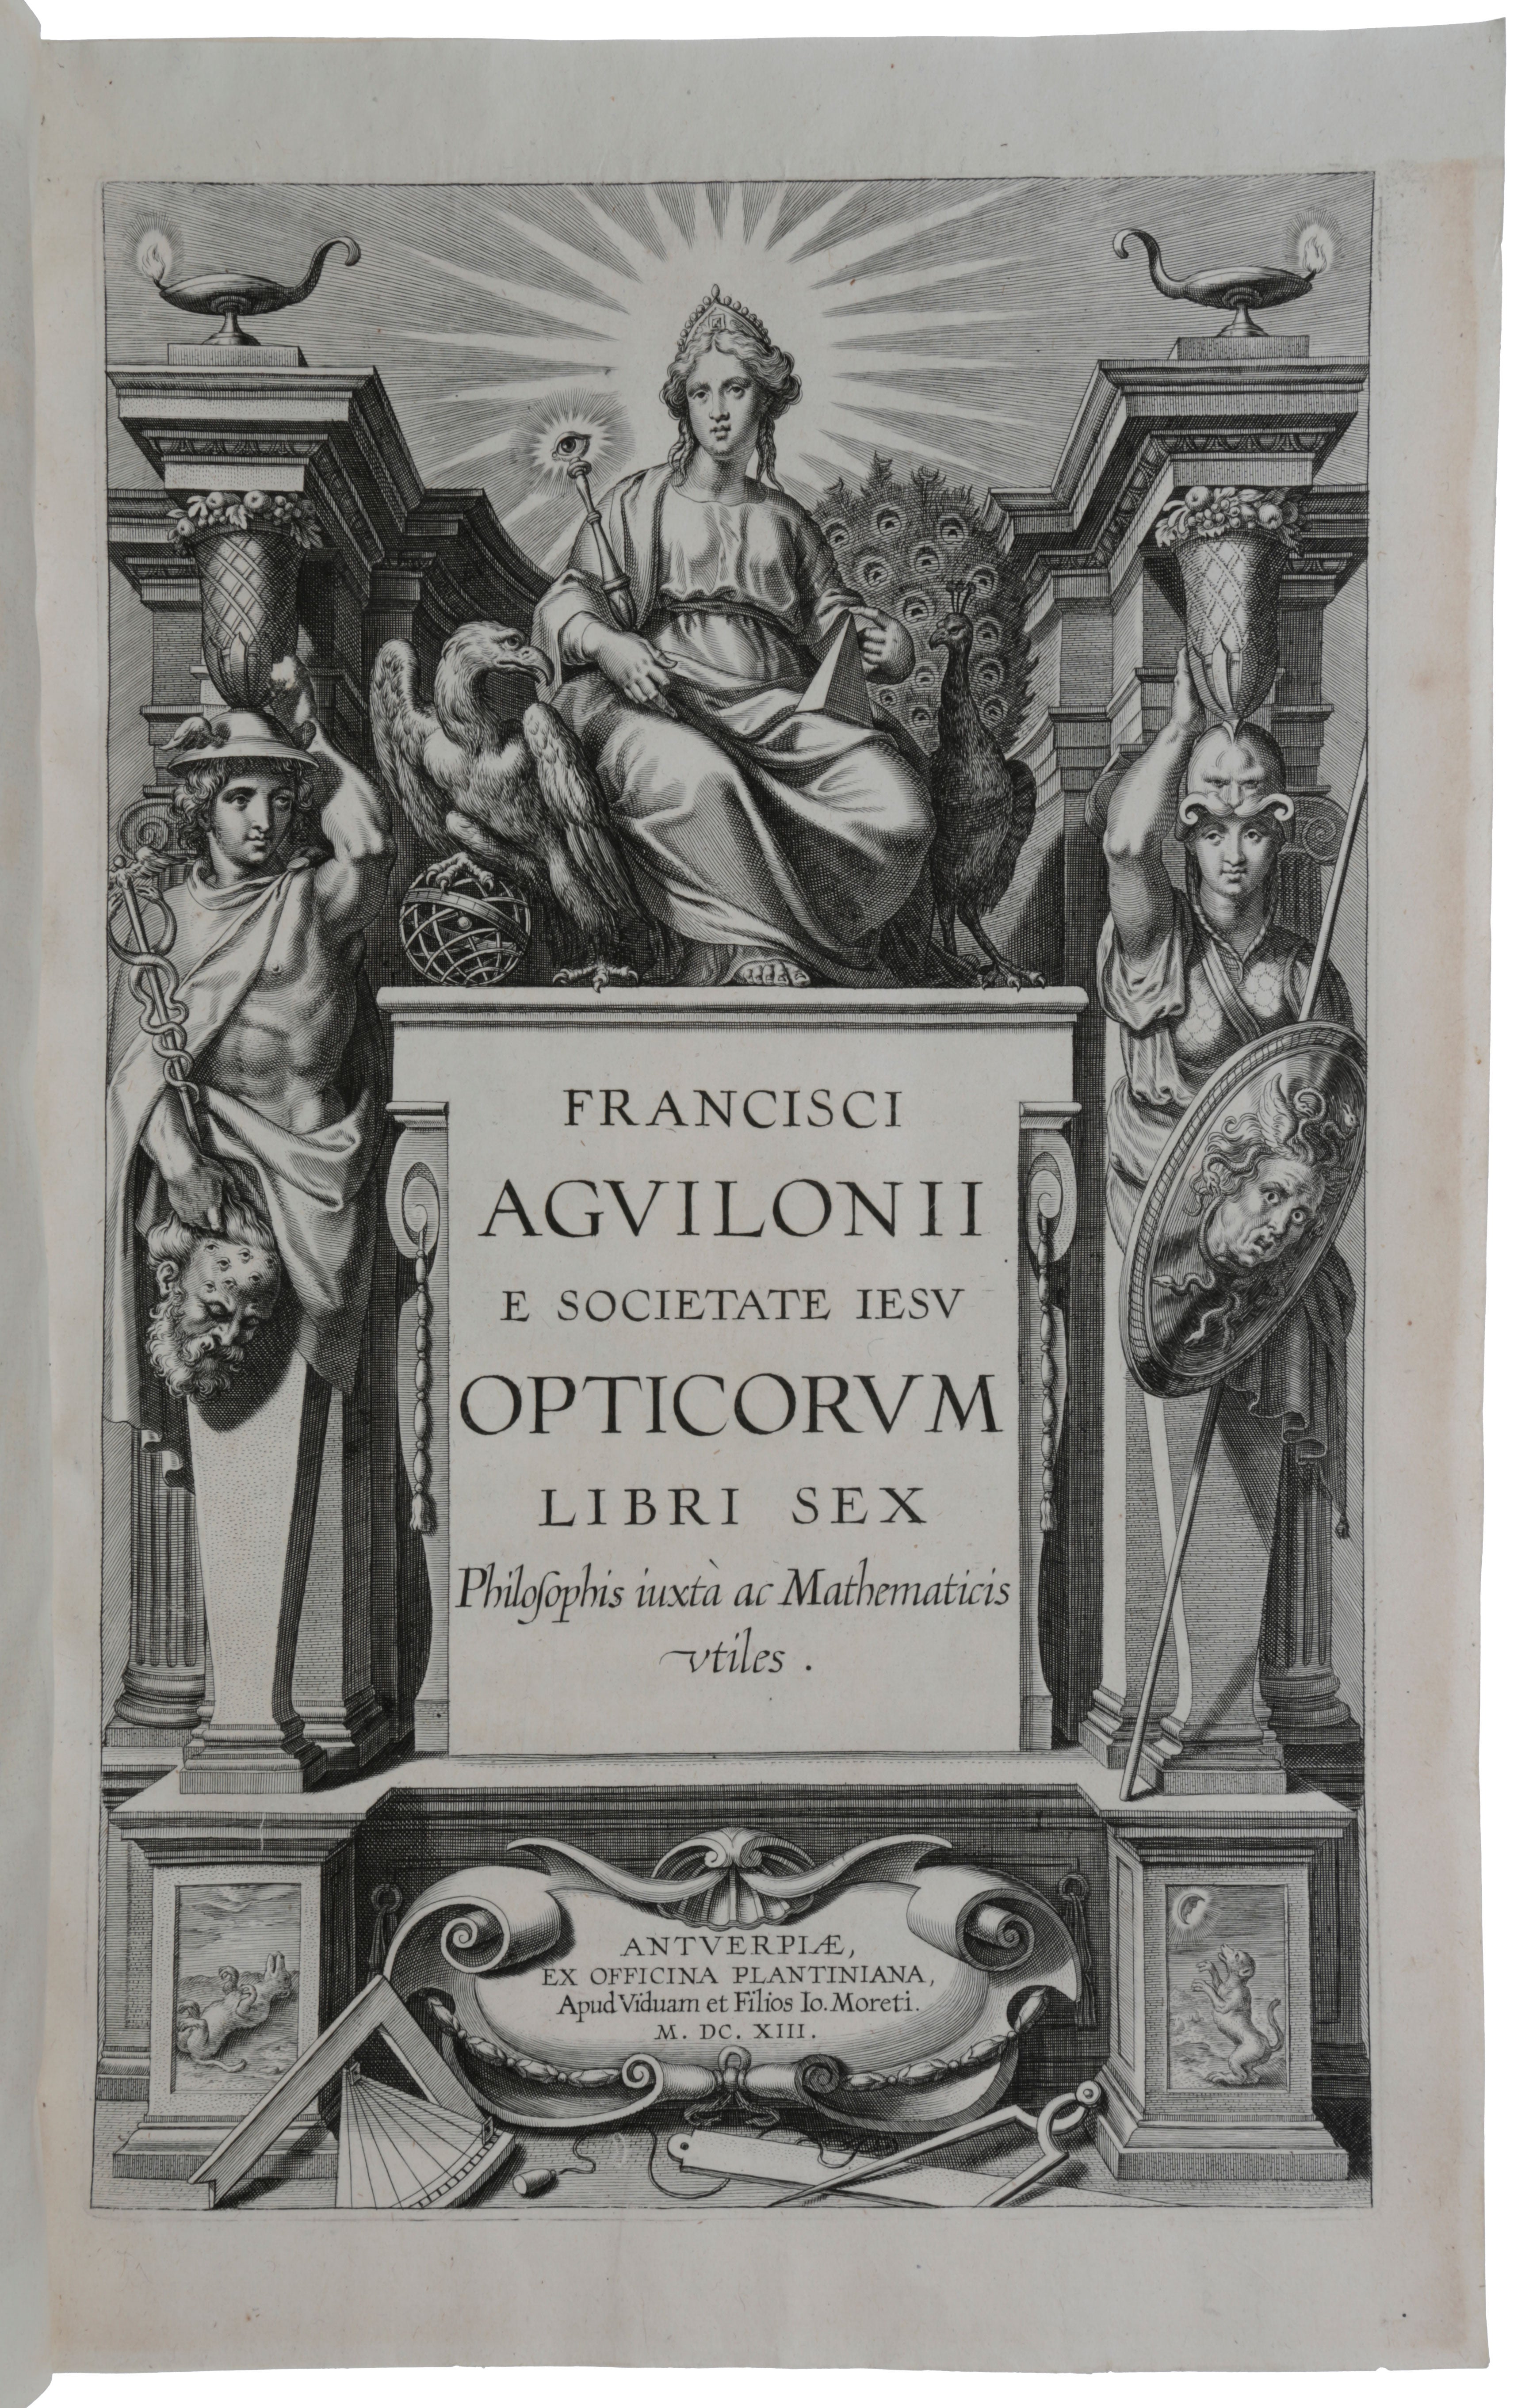 Item #4987 Opticorum libri sex philosophis iuxta ac mathematicis utilis. François d’ AGUILON.